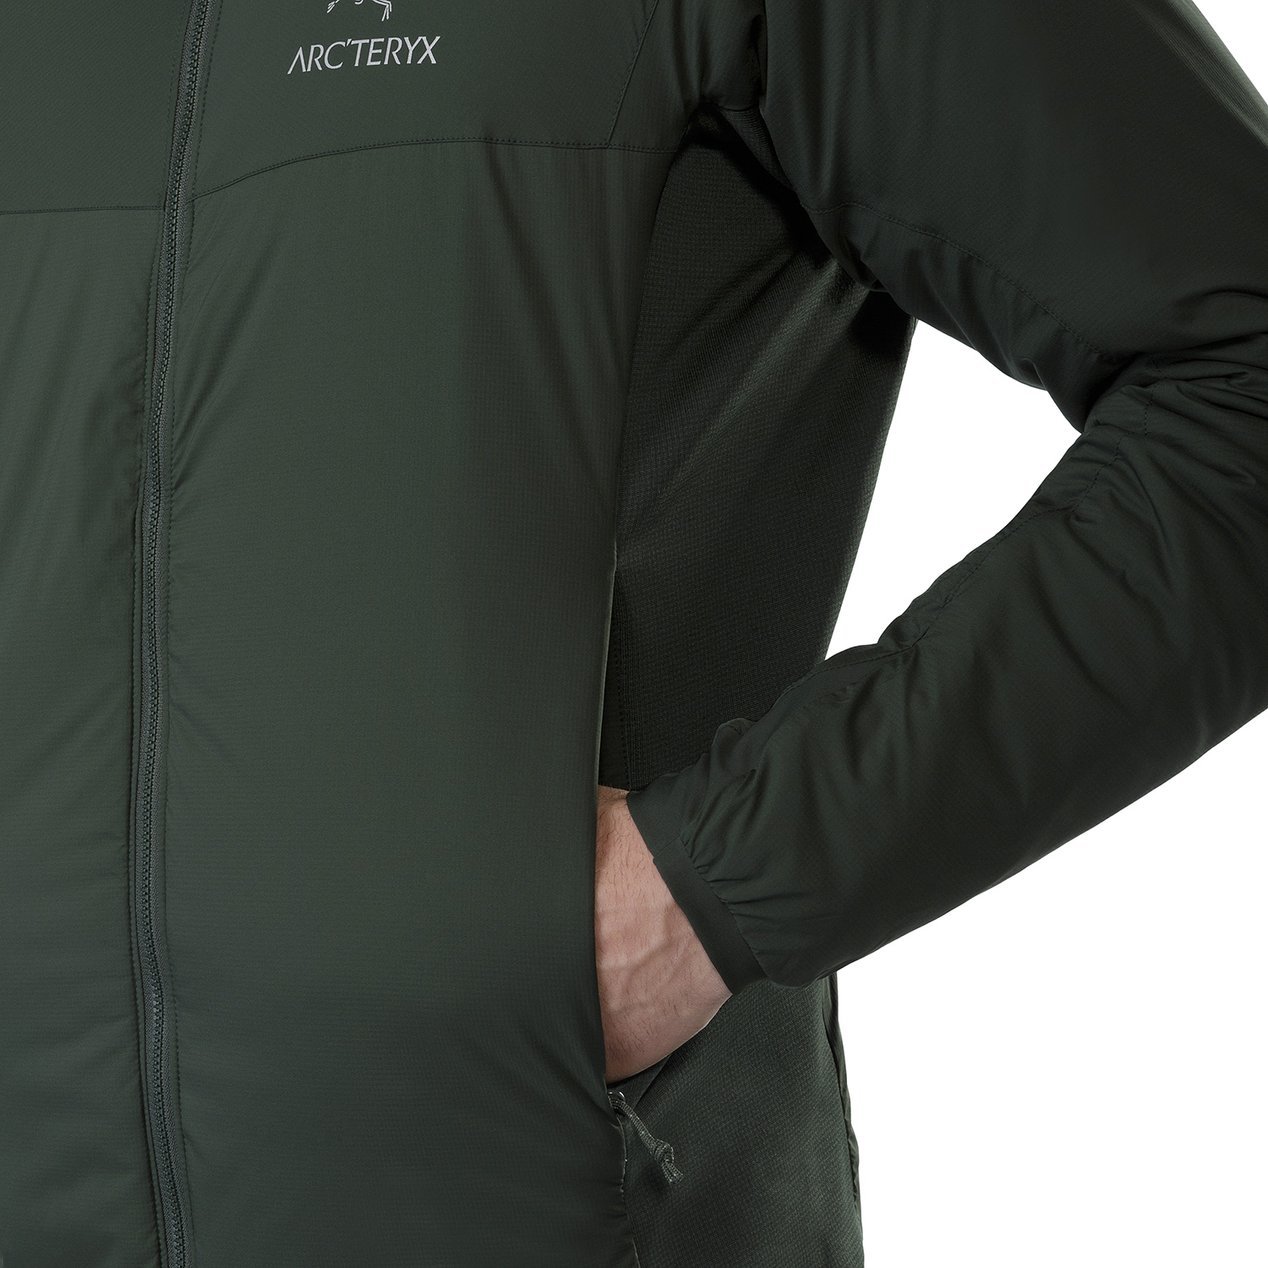 Arcteryx Atom LT Mens Jacket 2019